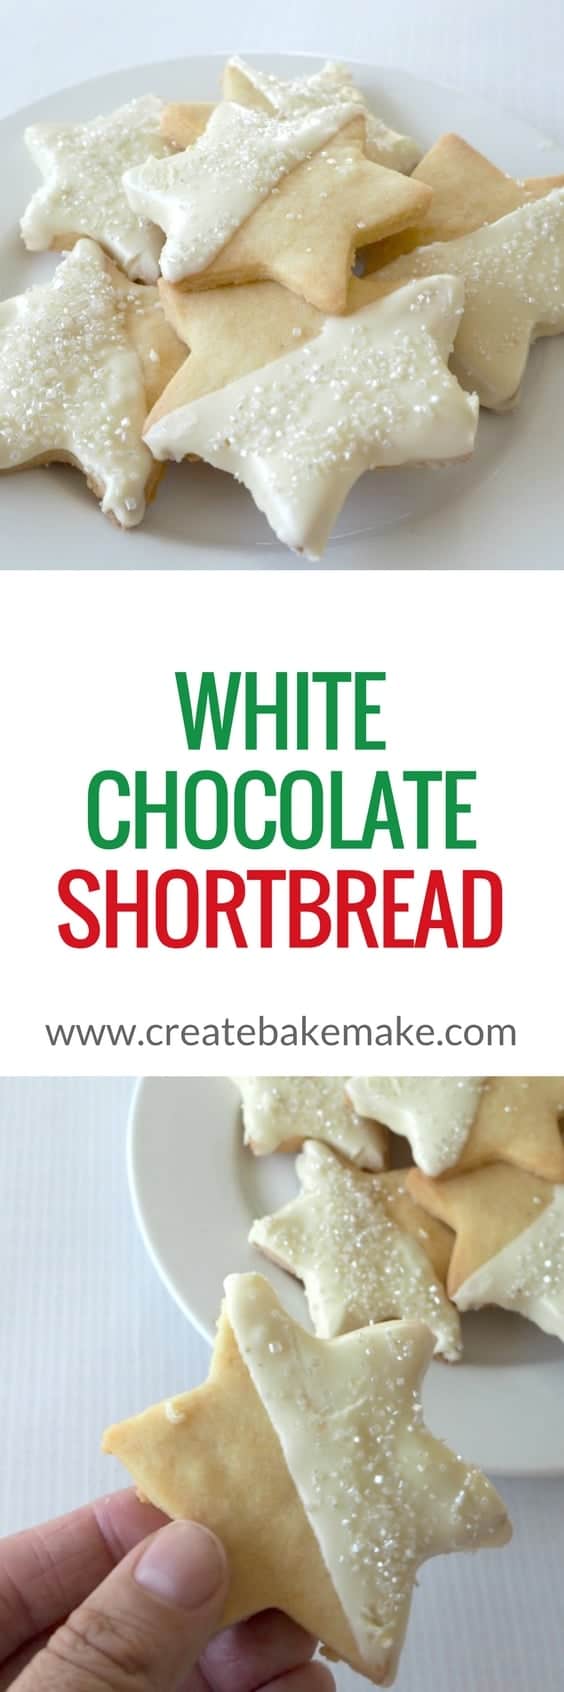 White Chocolate Shortbread Recipe